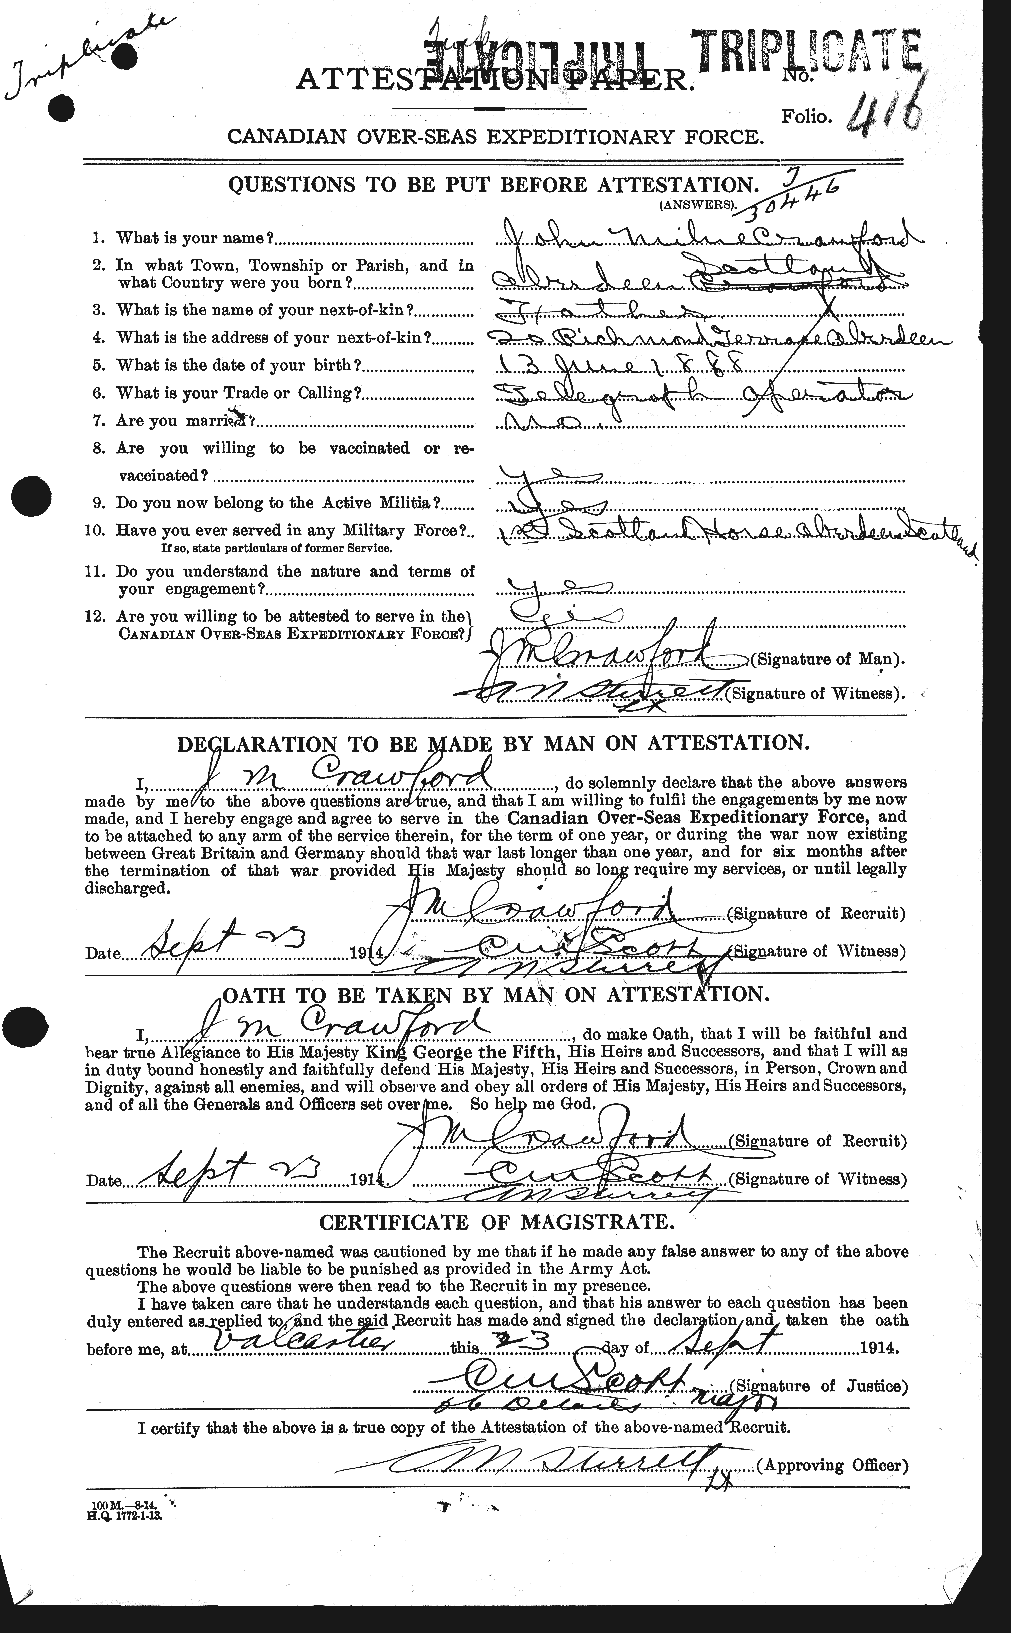 Dossiers du Personnel de la Première Guerre mondiale - CEC 061827a